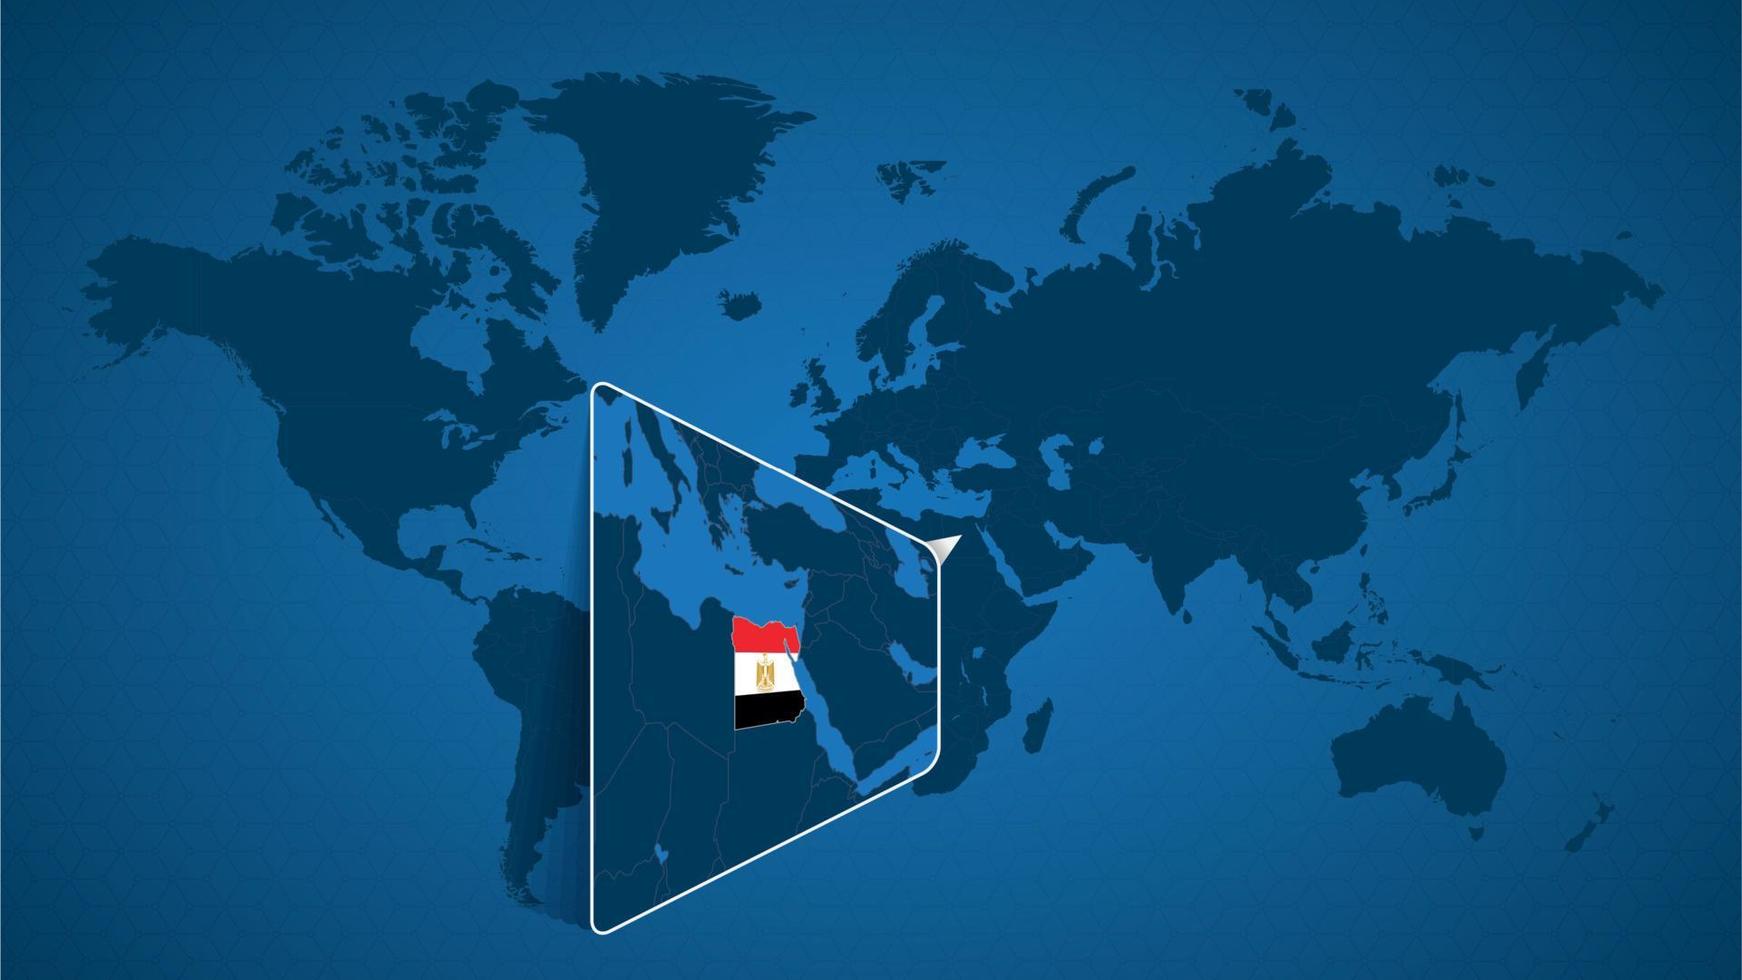 mappa del mondo dettagliata con mappa ingrandita appuntata dell'Egitto e dei paesi vicini. vettore